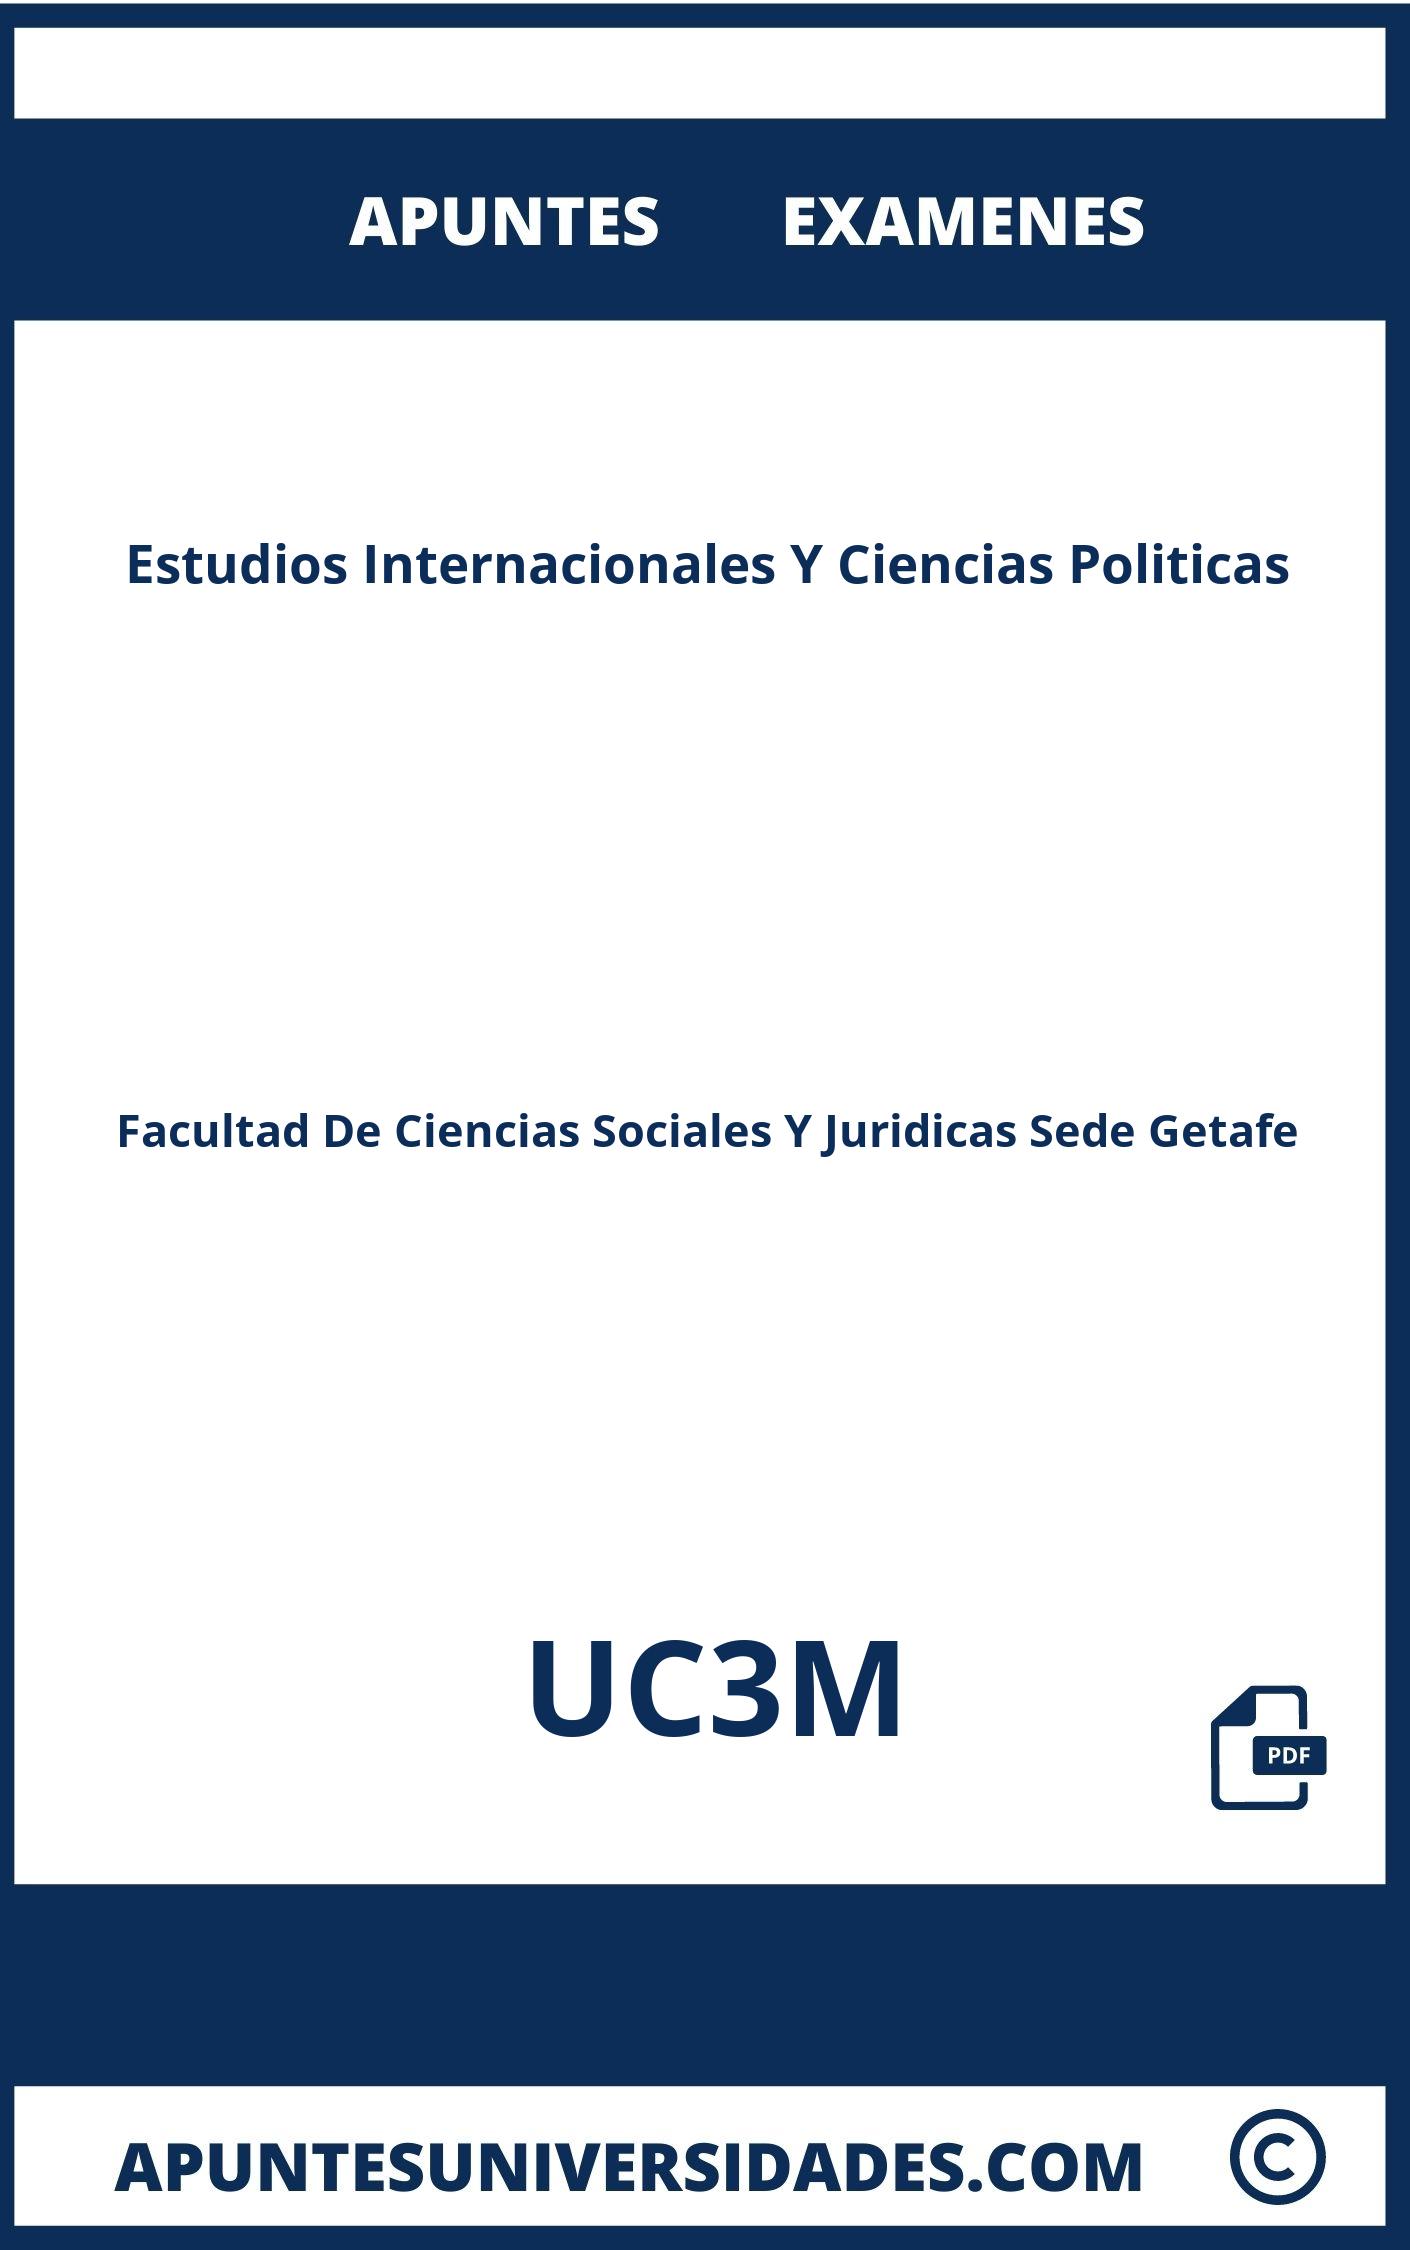 Apuntes y Examenes Estudios Internacionales Y Ciencias Politicas UC3M